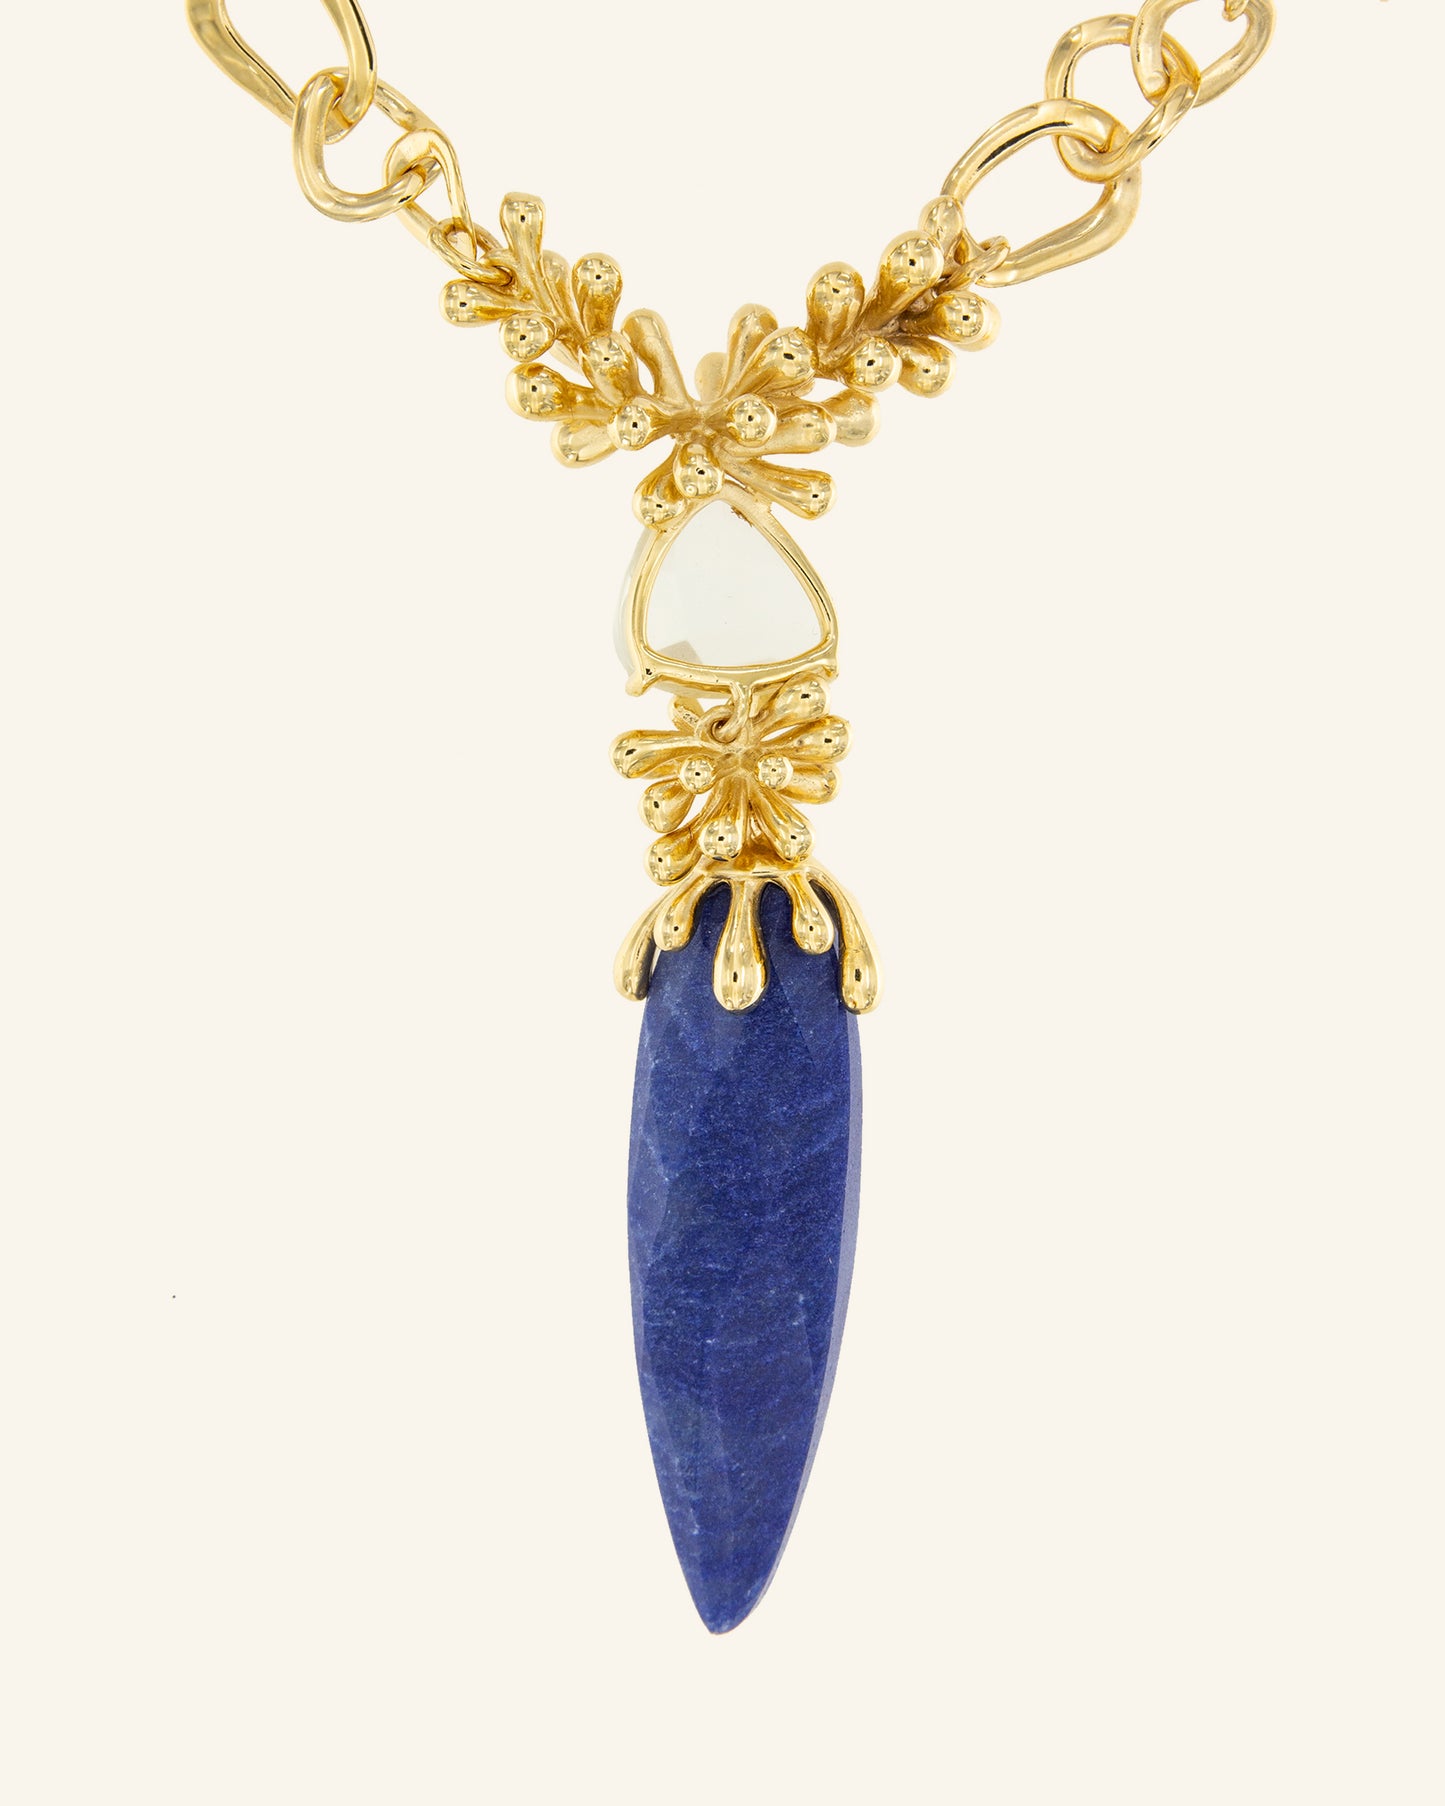 Indian necklace with blue quartz and lemon quartz